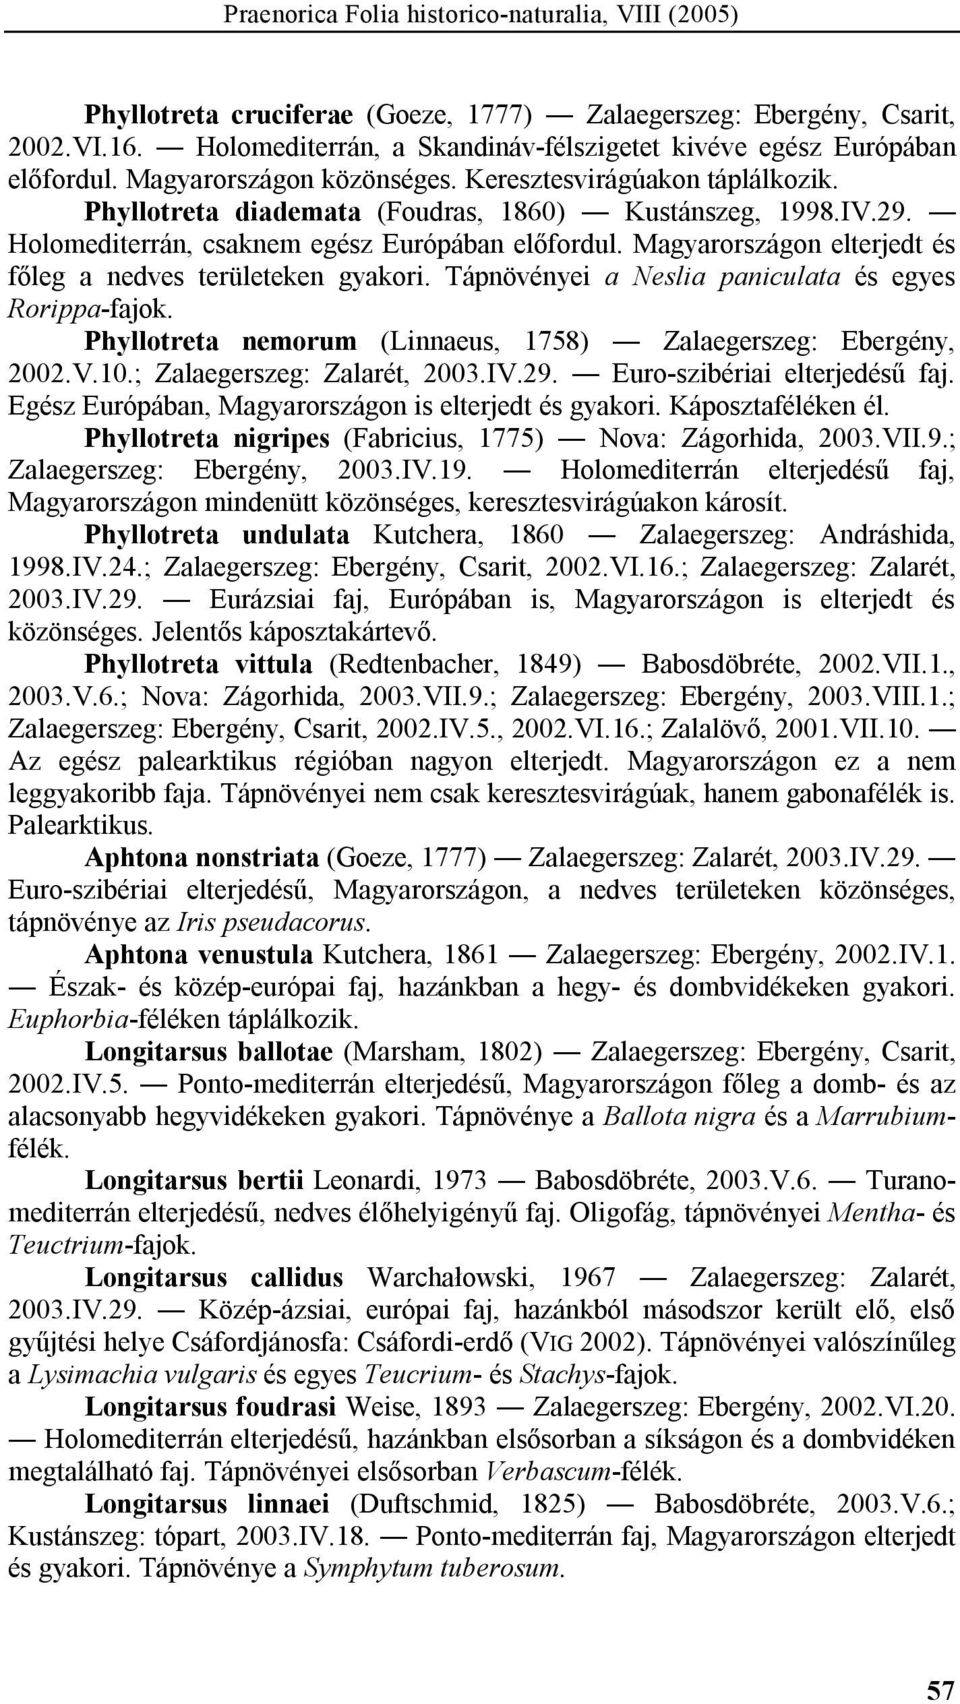 Holomediterrán, csaknem egész Európában előfordul. Magyarországon elterjedt és főleg a nedves területeken gyakori. Tápnövényei a Neslia paniculata és egyes Rorippa-fajok.